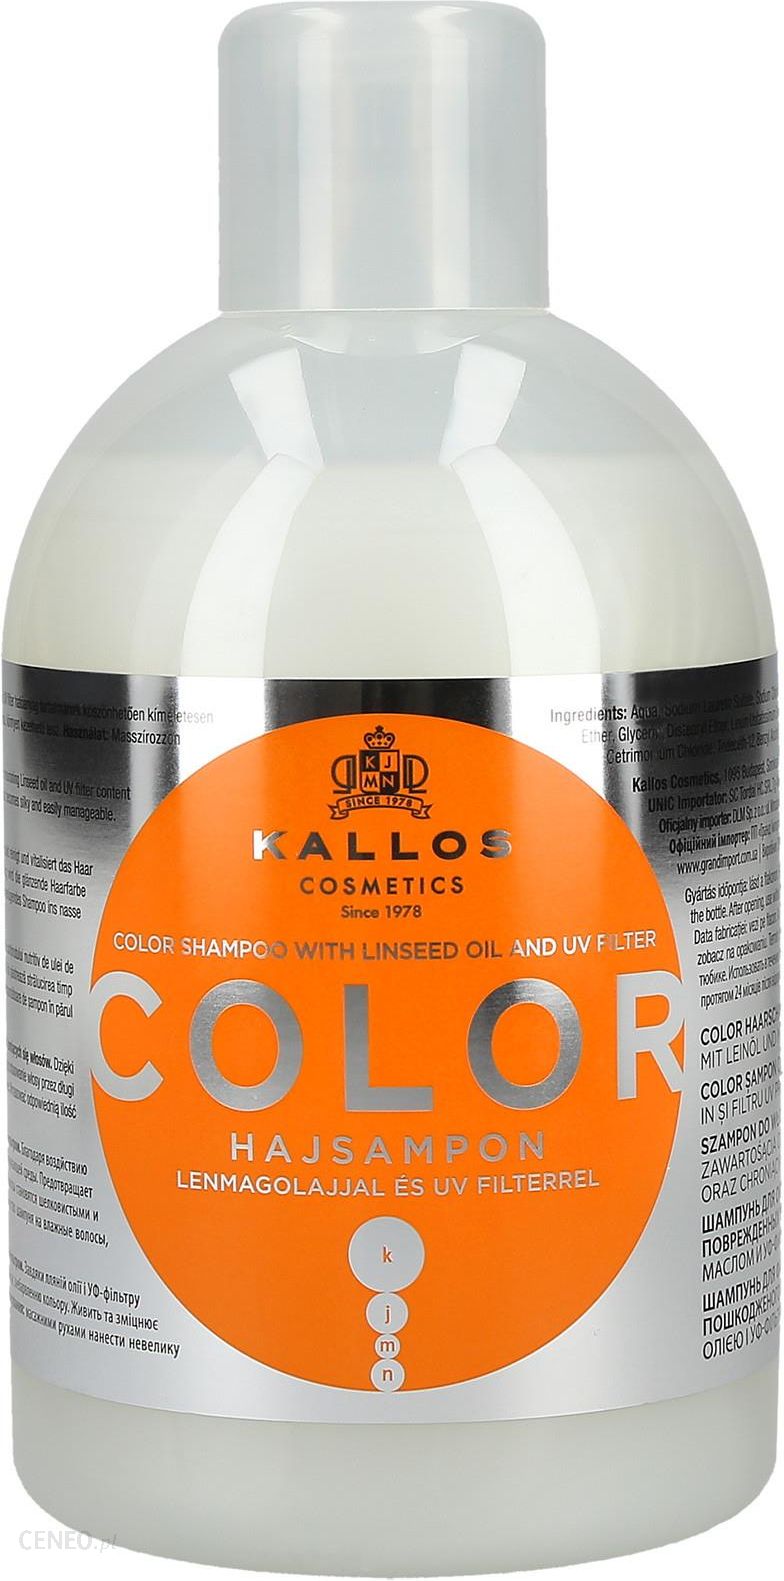 kallos szampon color opinie